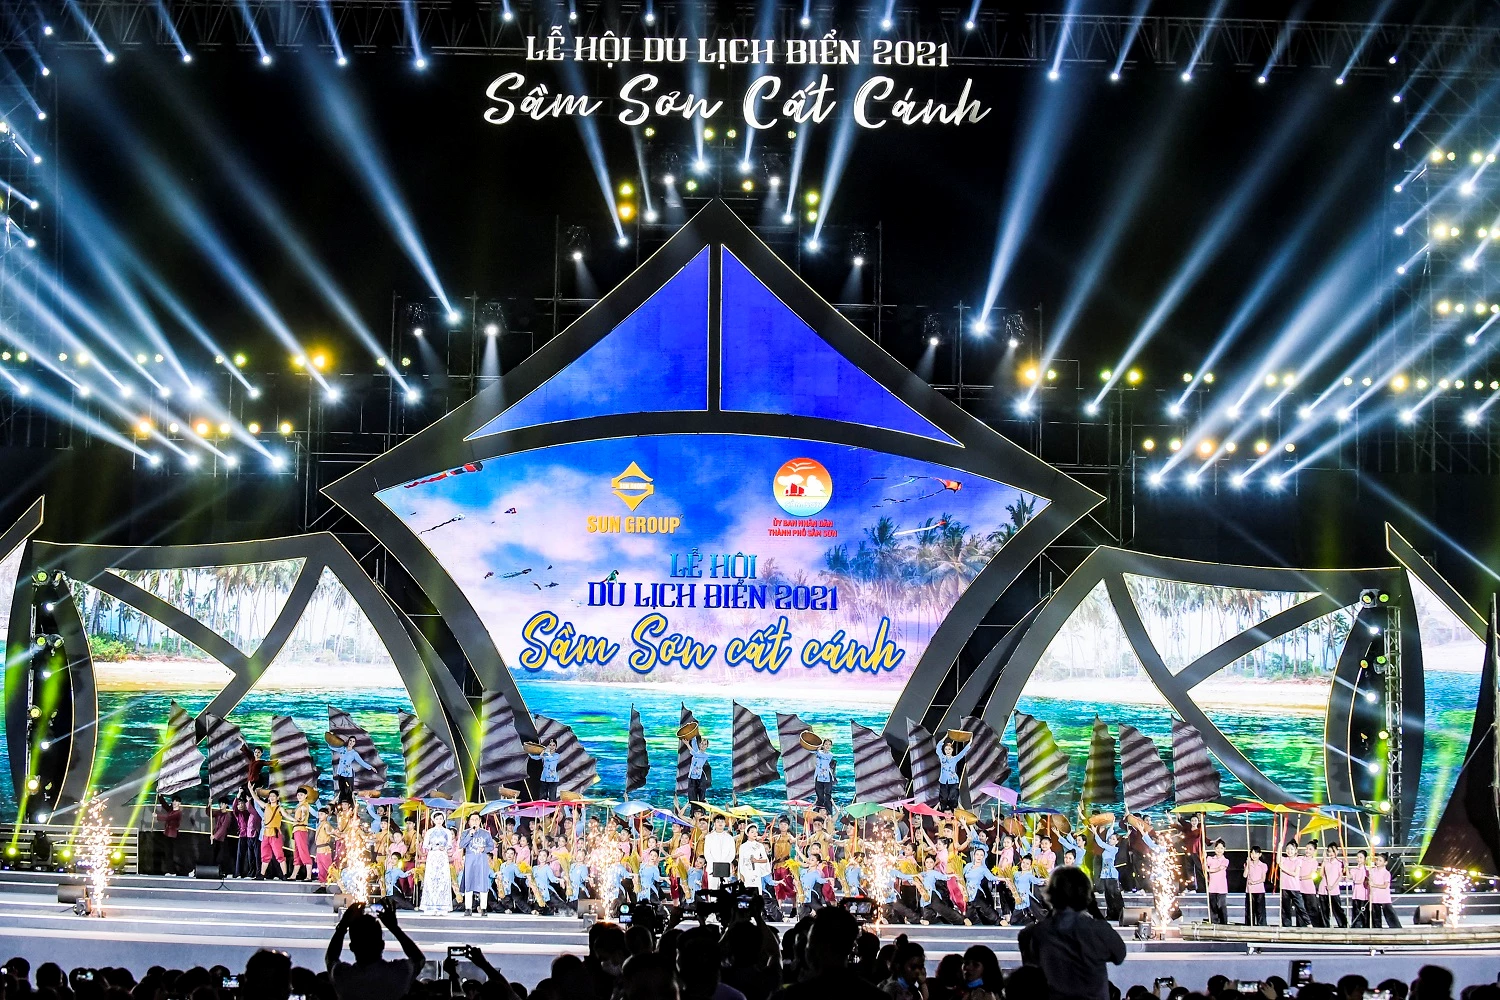 Lễ hội du lịch biển Sầm Sơn cất cánh được tổ chức tại khu vực Quảng trường biển tương lai